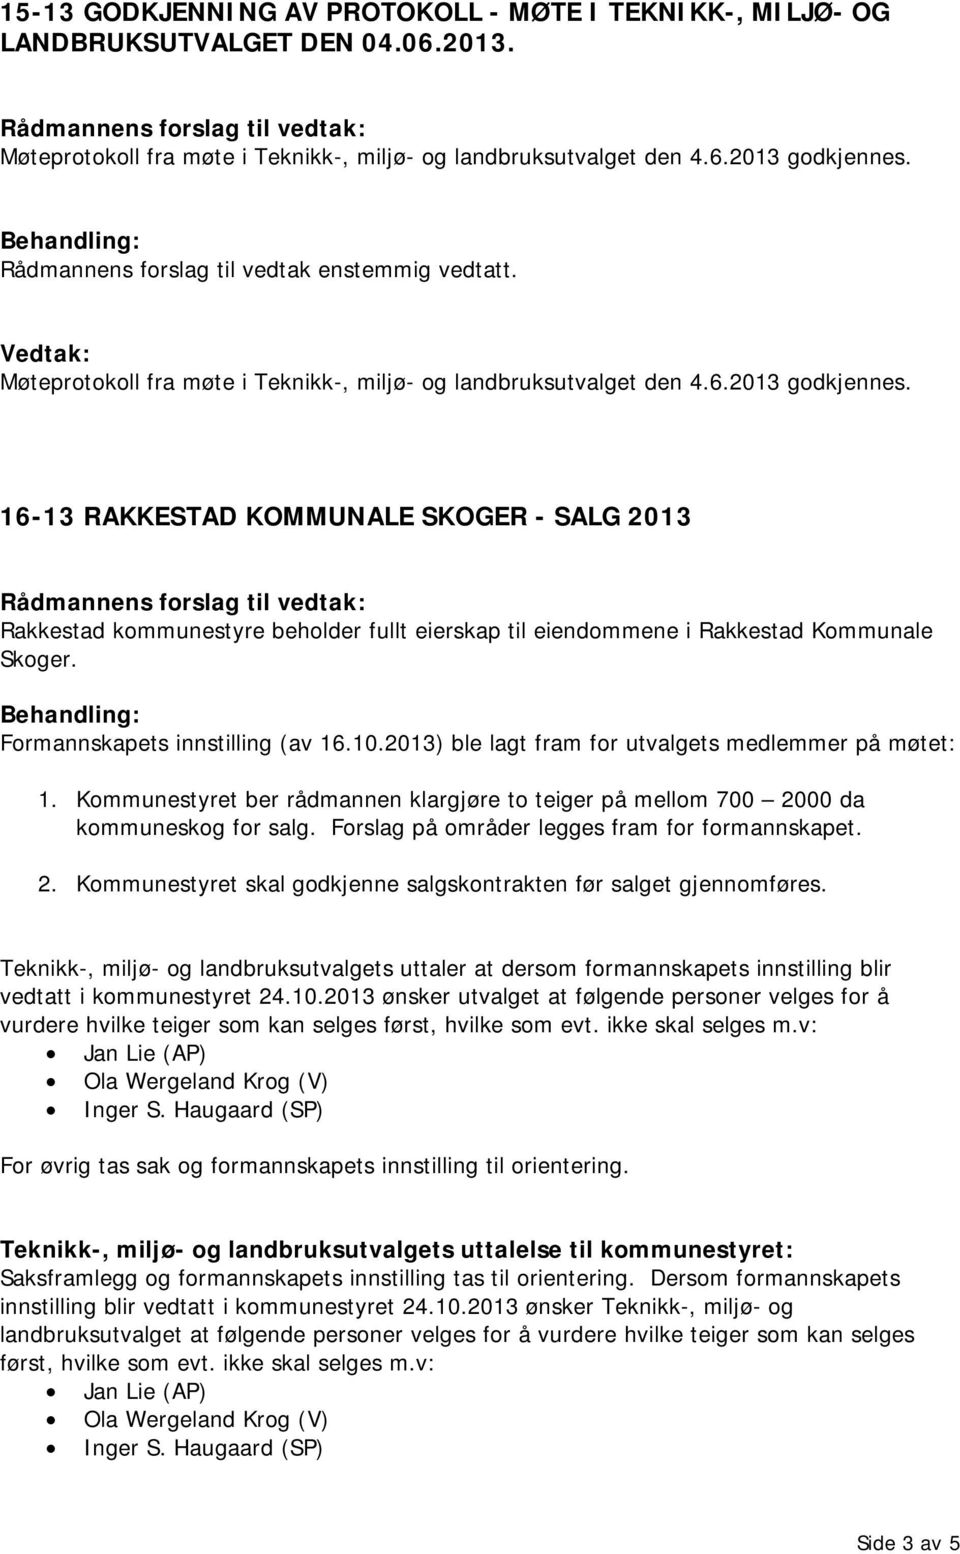 16-13 RAKKESTAD KOMMUNALE SKOGER - SALG 2013 Rakkestad kommunestyre beholder fullt eierskap til eiendommene i Rakkestad Kommunale Skoger. Formannskapets innstilling (av 16.10.